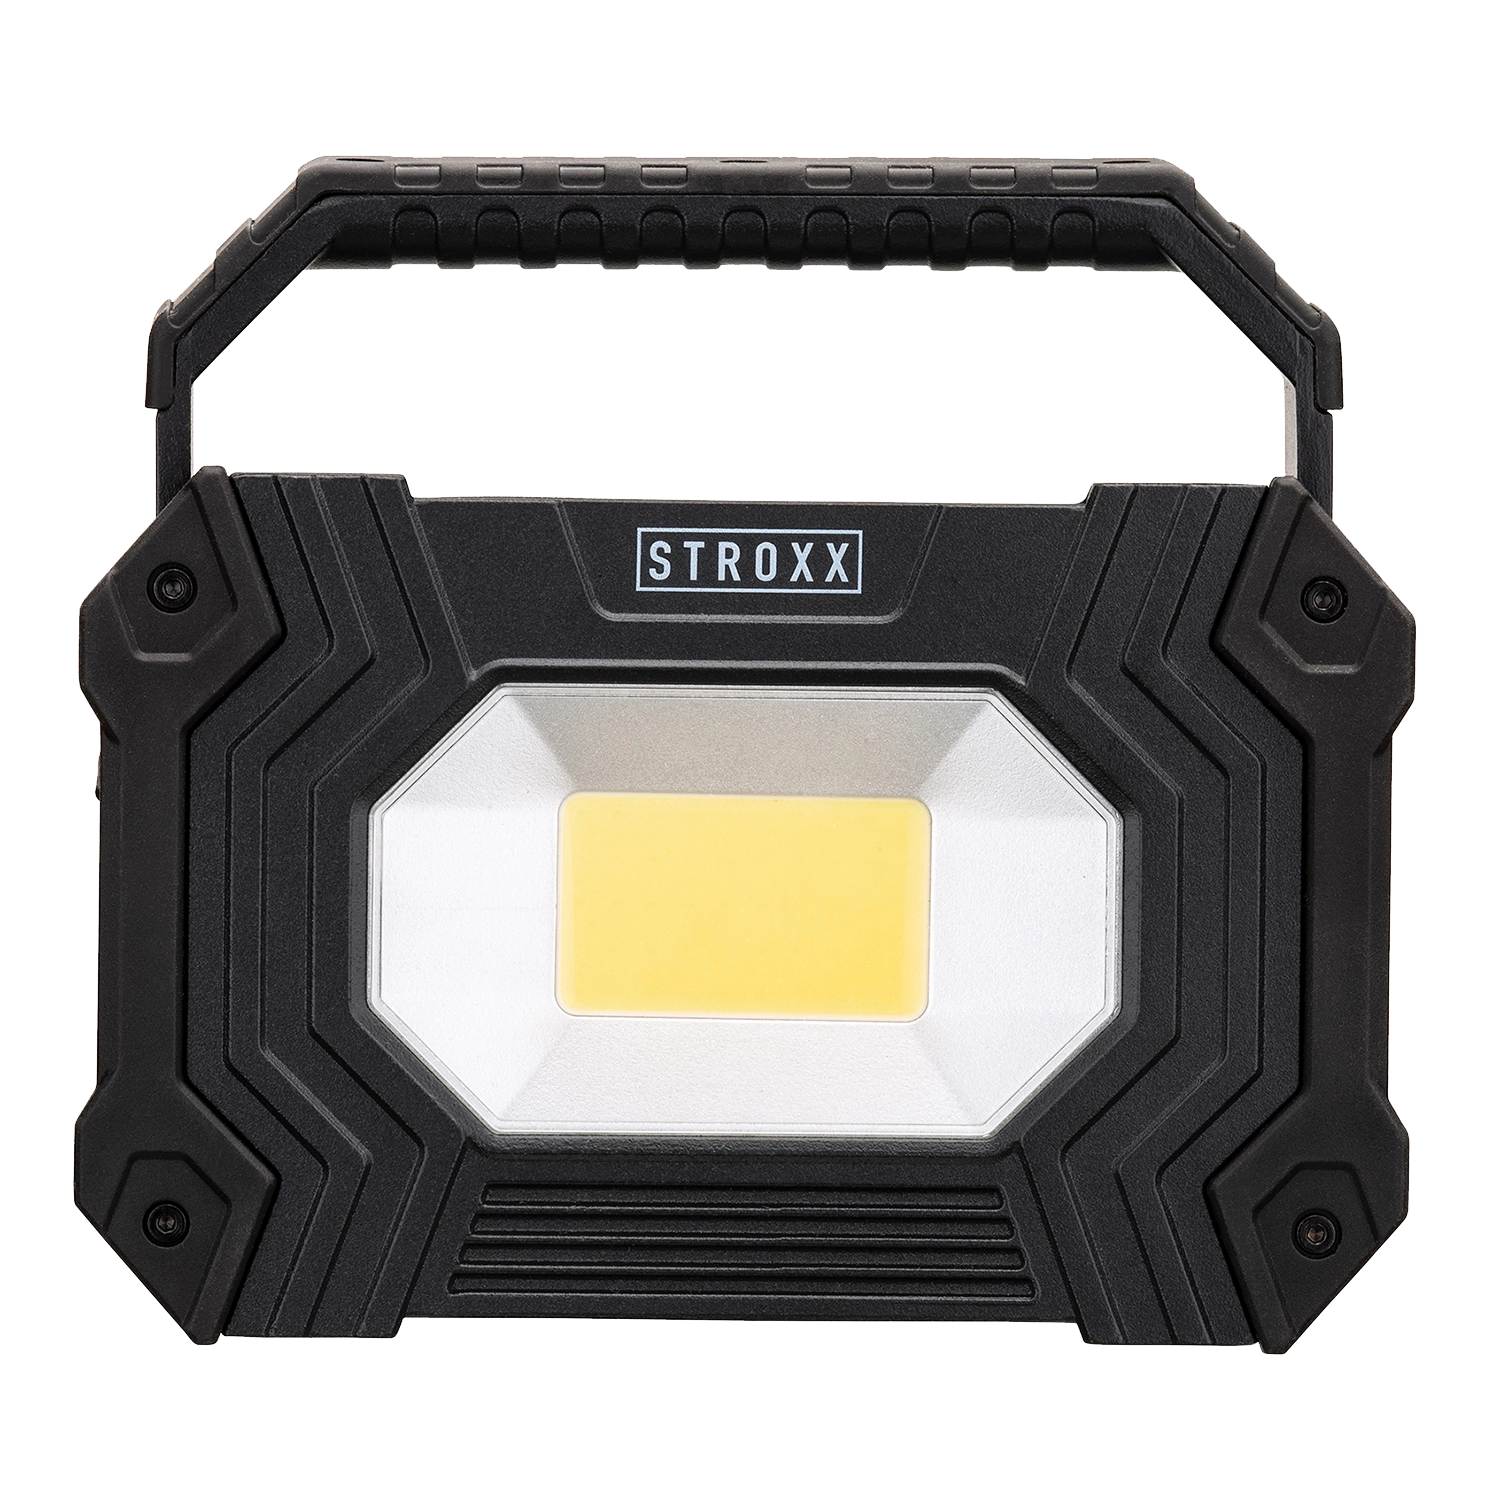 STROXX OPLAADBARE WERFLAMP: Compacte, krachtige LED-lamp met oplaadbare batterij, geschikt voor gebruik op bouwplaatsen en buiten. IP65-classificatie.